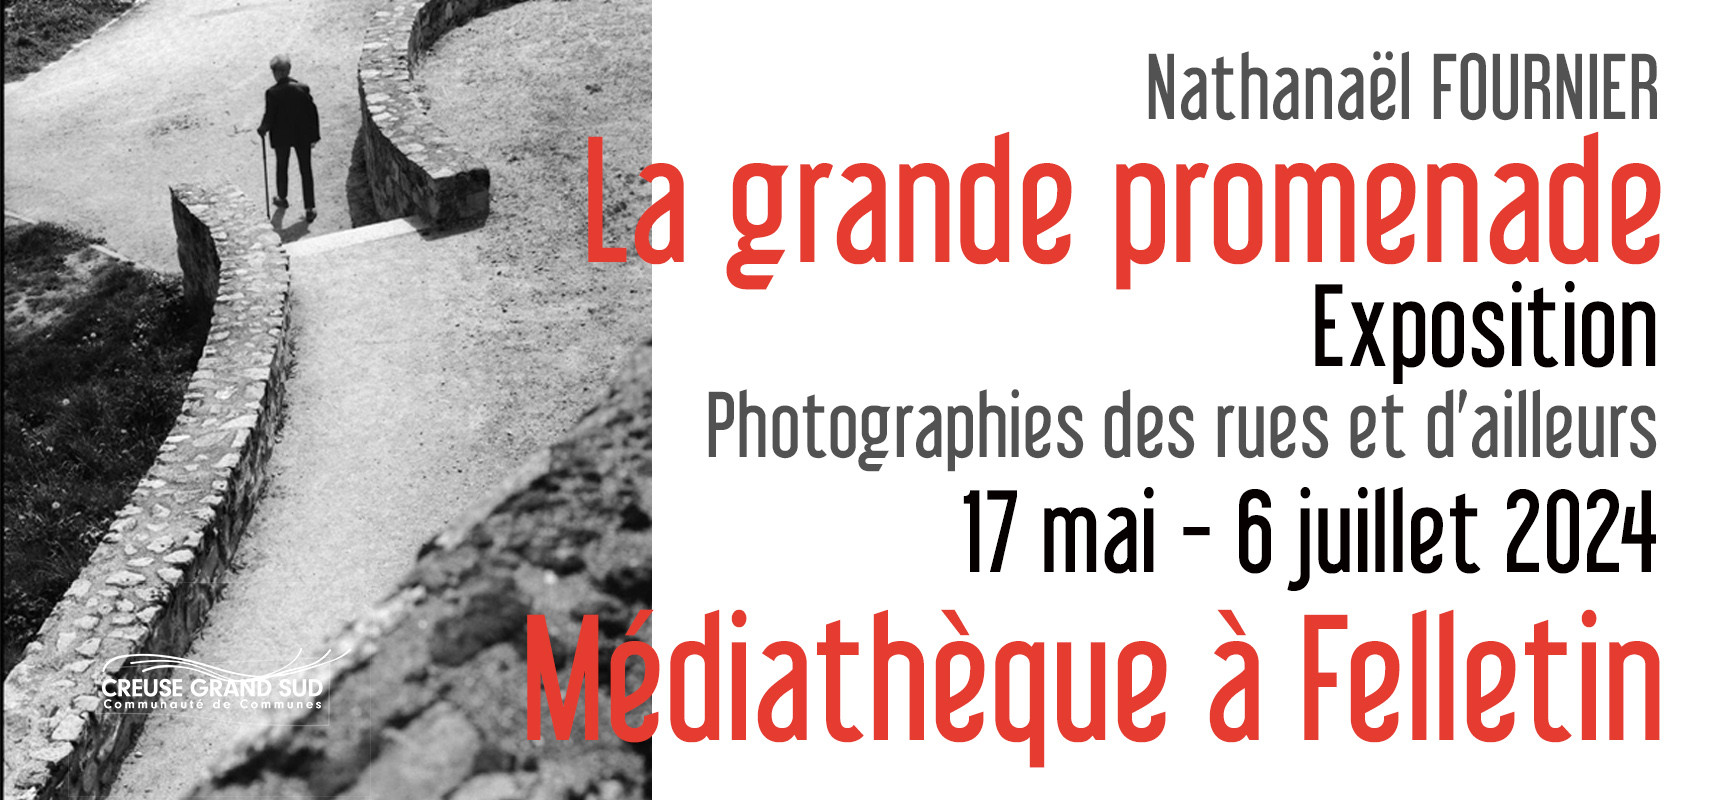 [Médiathèque] Exposition Photos « La grande promenade » de Nathanaël FOURNIER – du 17 mai au 6 juillet 2024 #Felletin